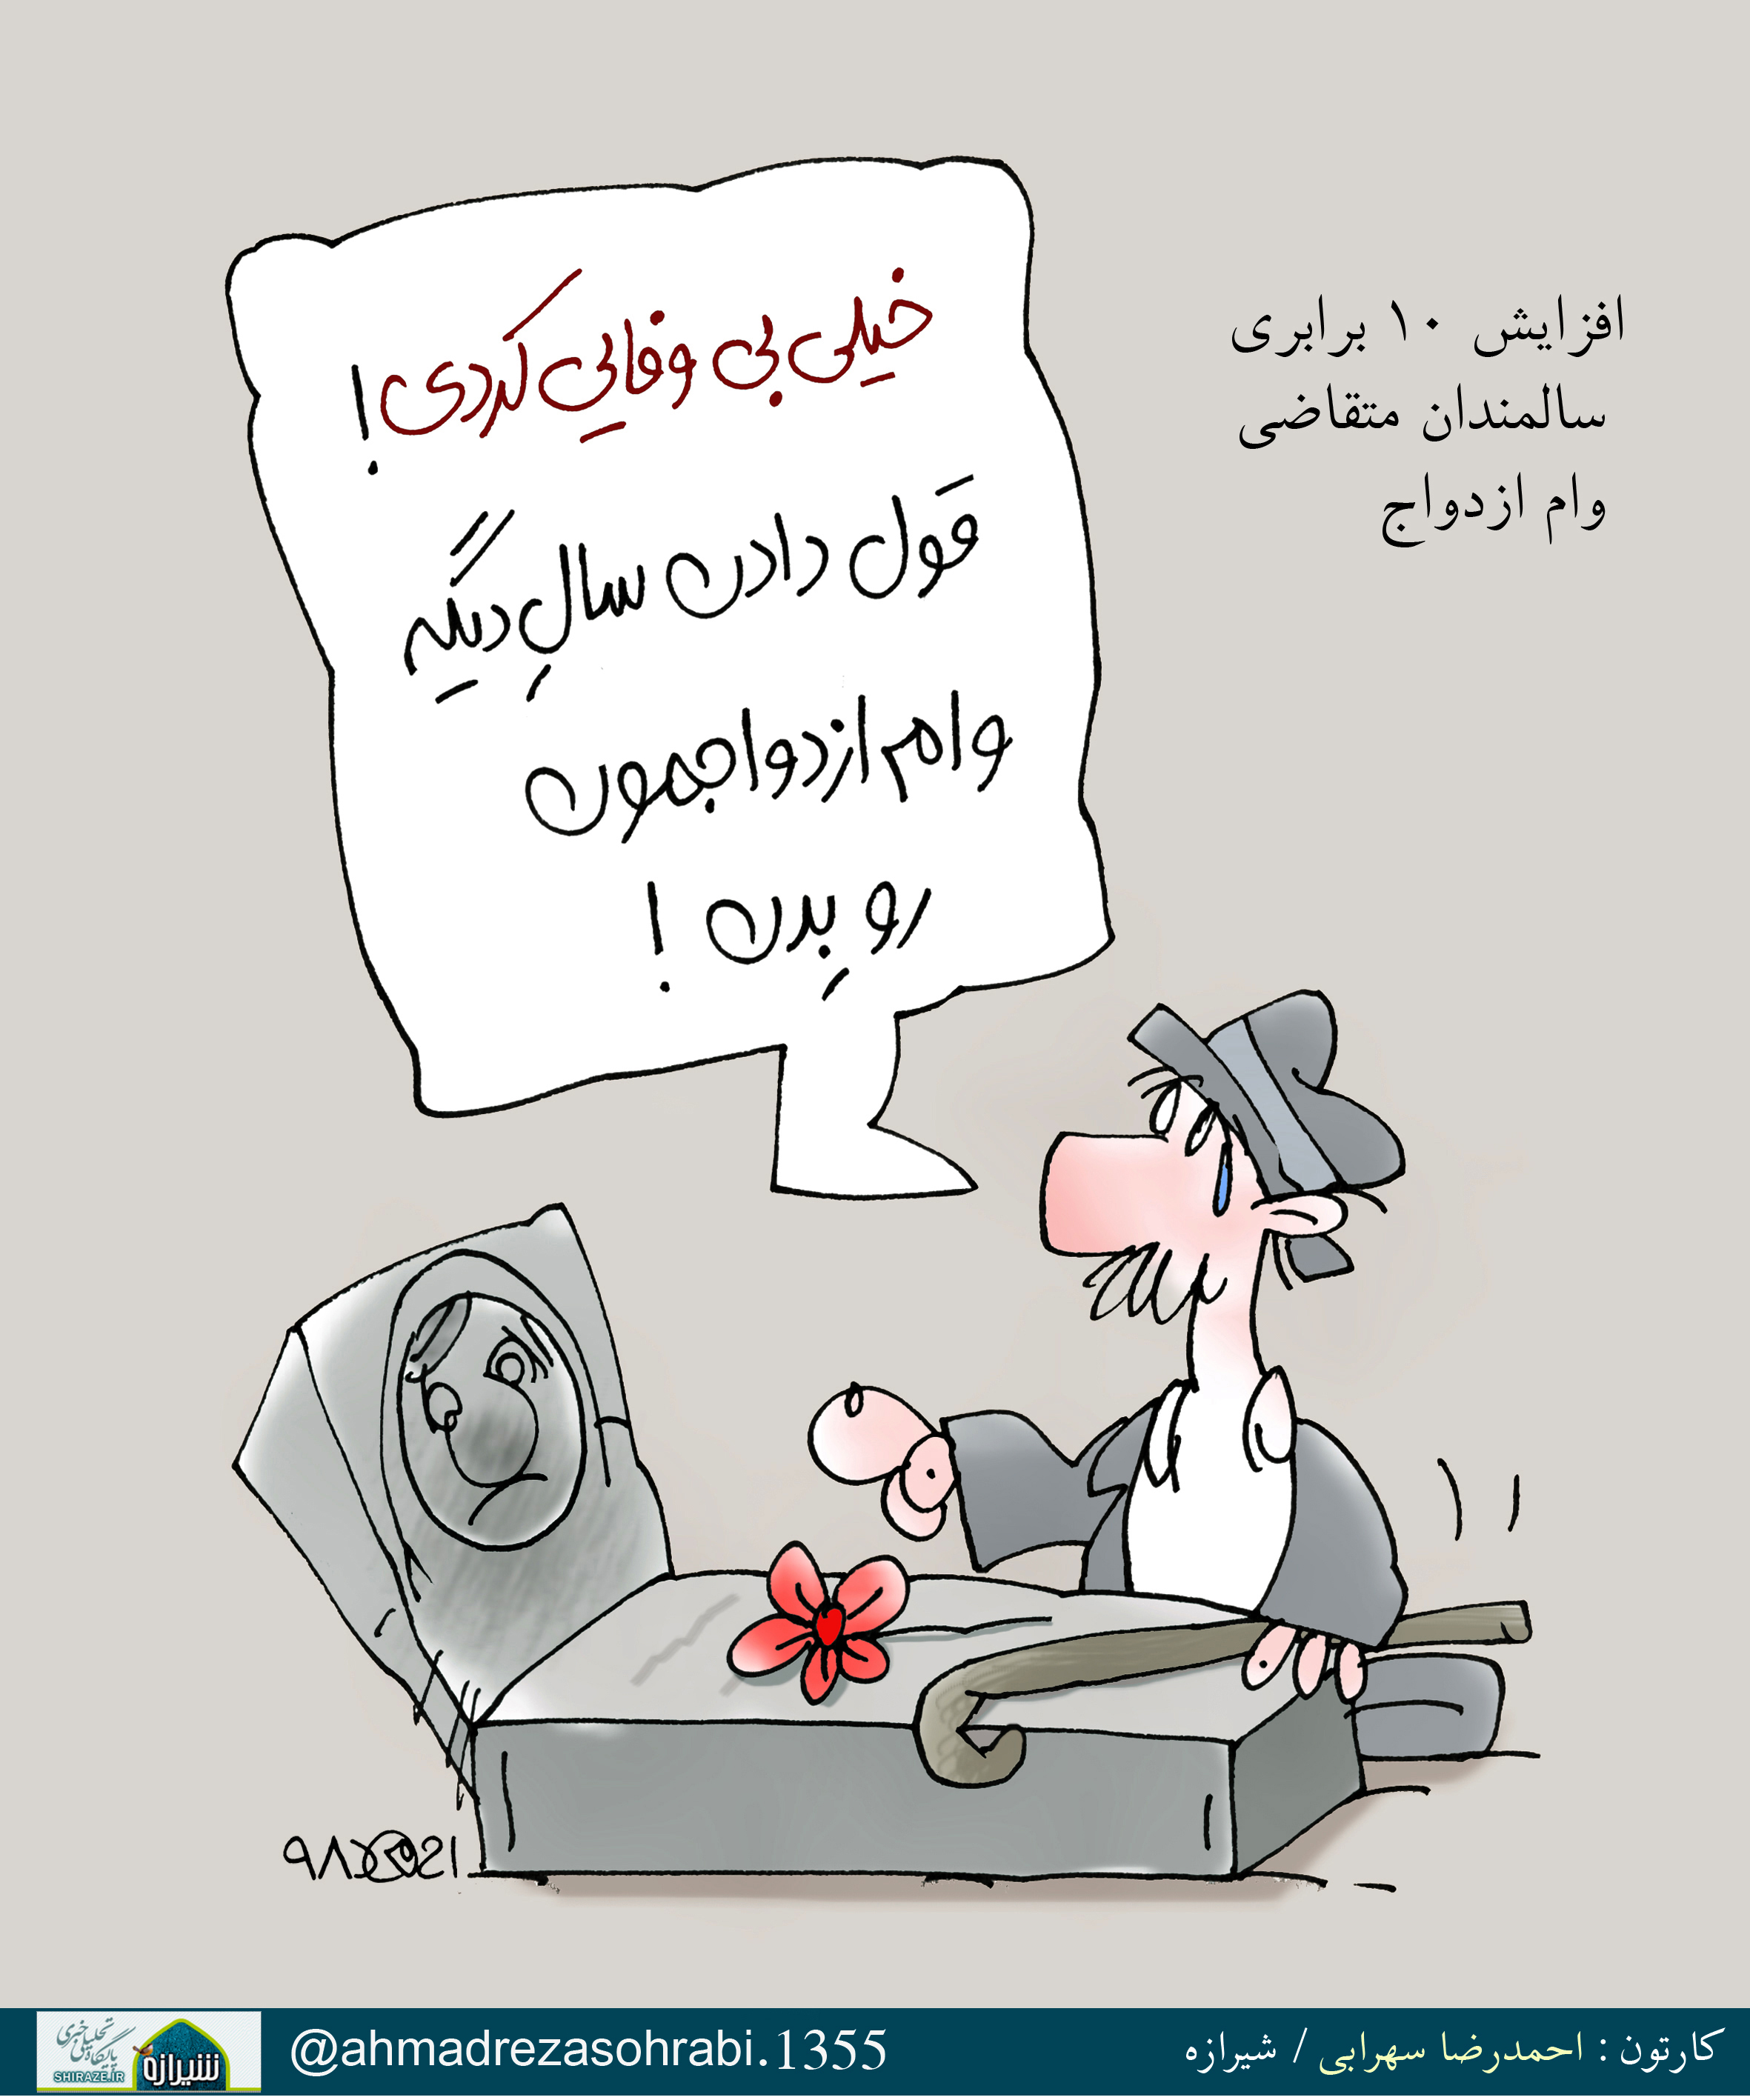 افزایش 10 برابری سالمندان متقاضی وام ازدواج / کارتون : احمدرضا سهرابی